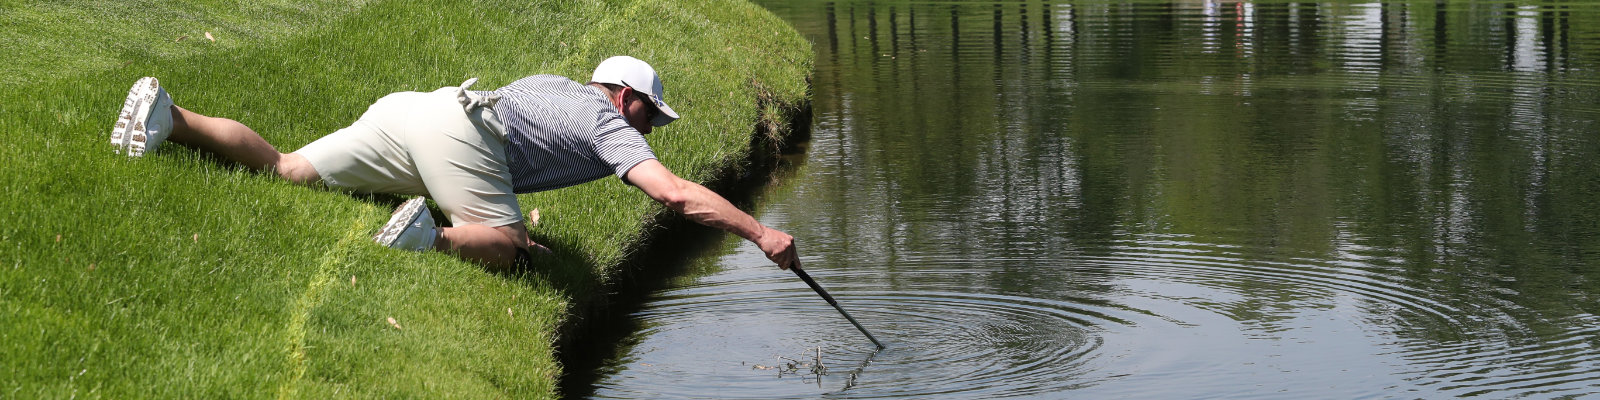 Nach seinem im See versenkten Ball fischender Golfspieler (photo by Ron Alvey / Shutterstock.com)